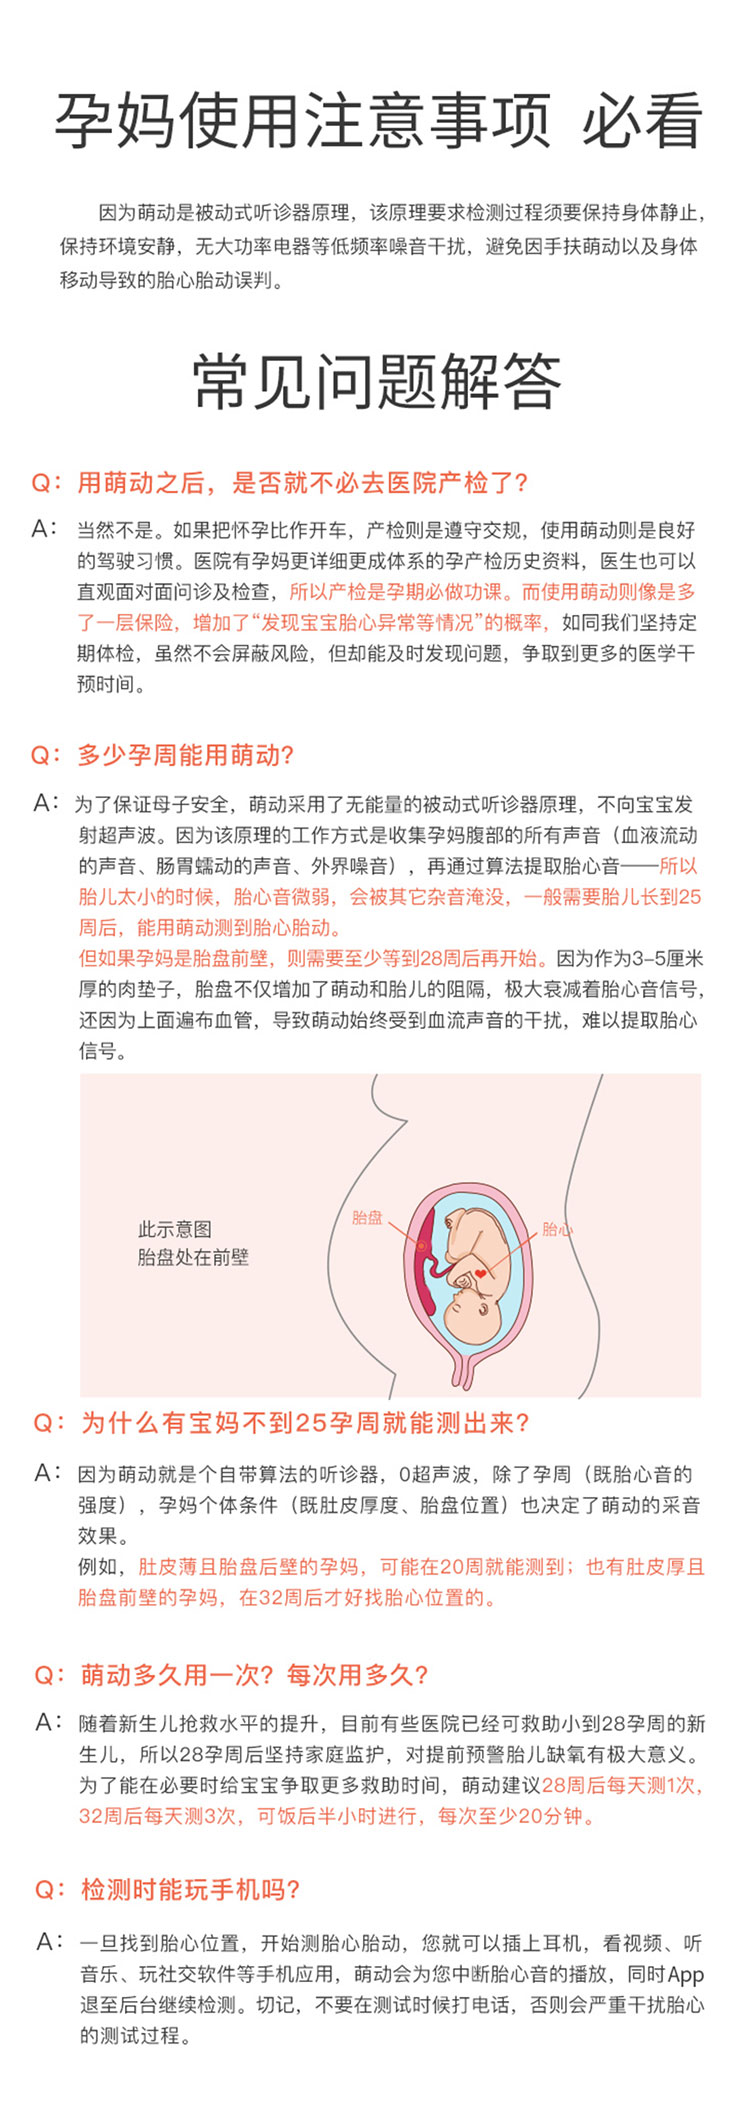 胎动胎心仪-普通款_13.jpg